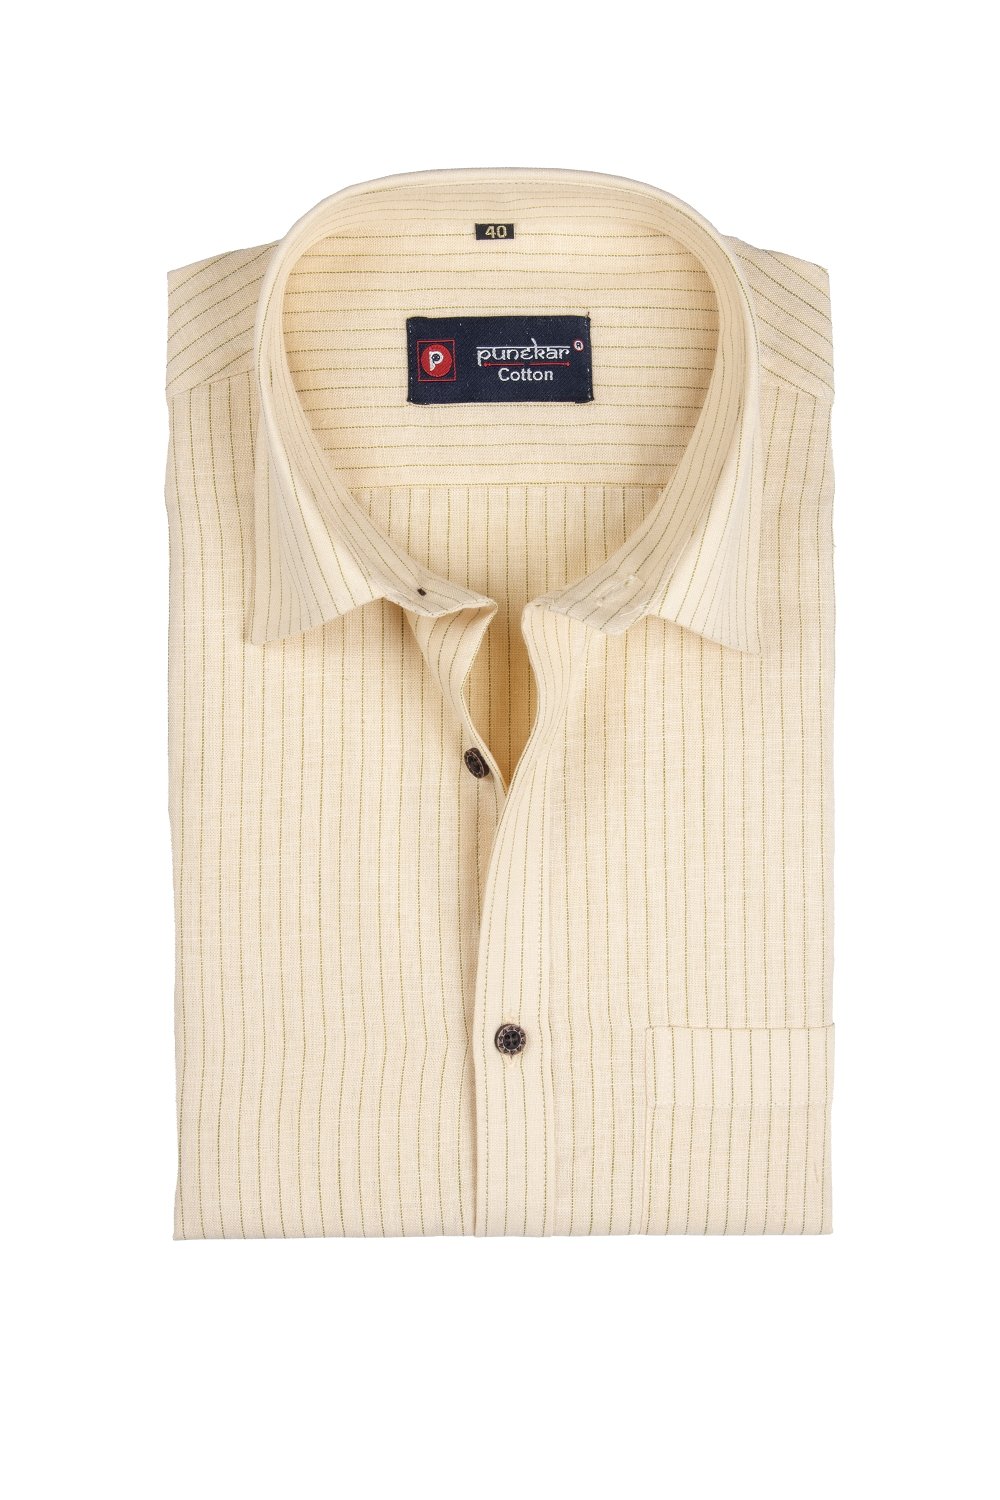 Punekar Cotton Cream Color Linning Criss Cross Woven Cotton Shirt for Men&